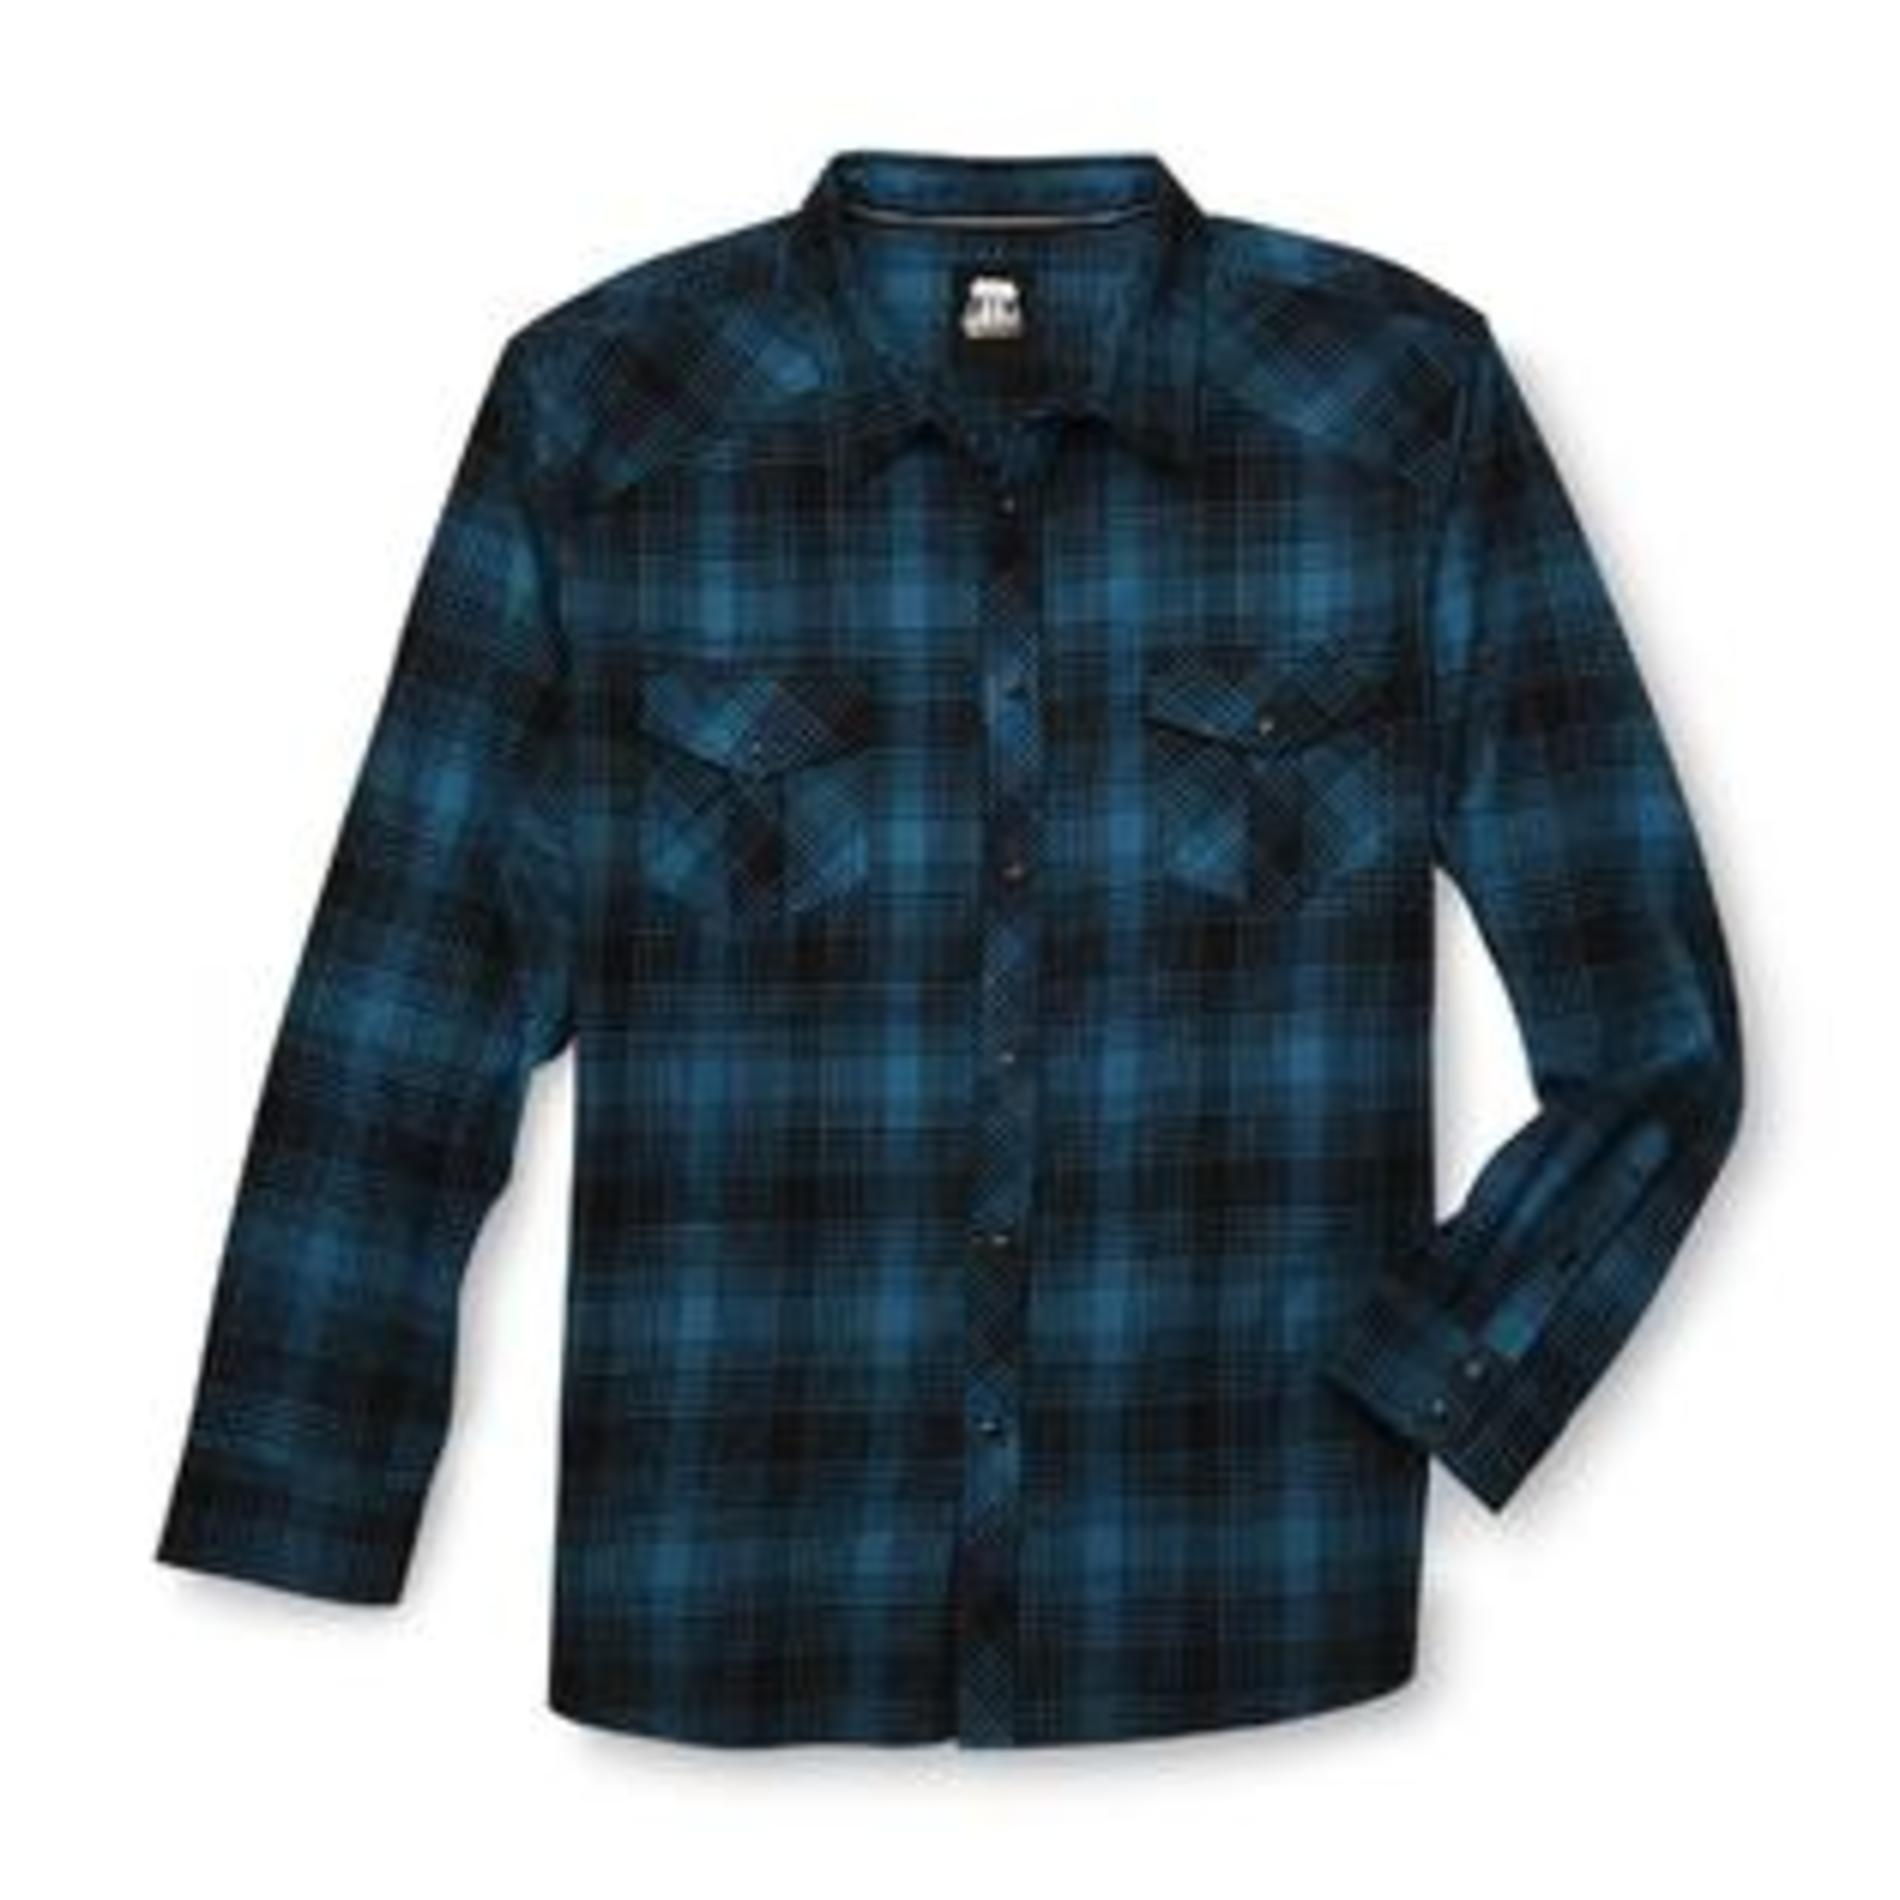 Route 66 Men's Snap-Front Flannel Shirt - Plaid